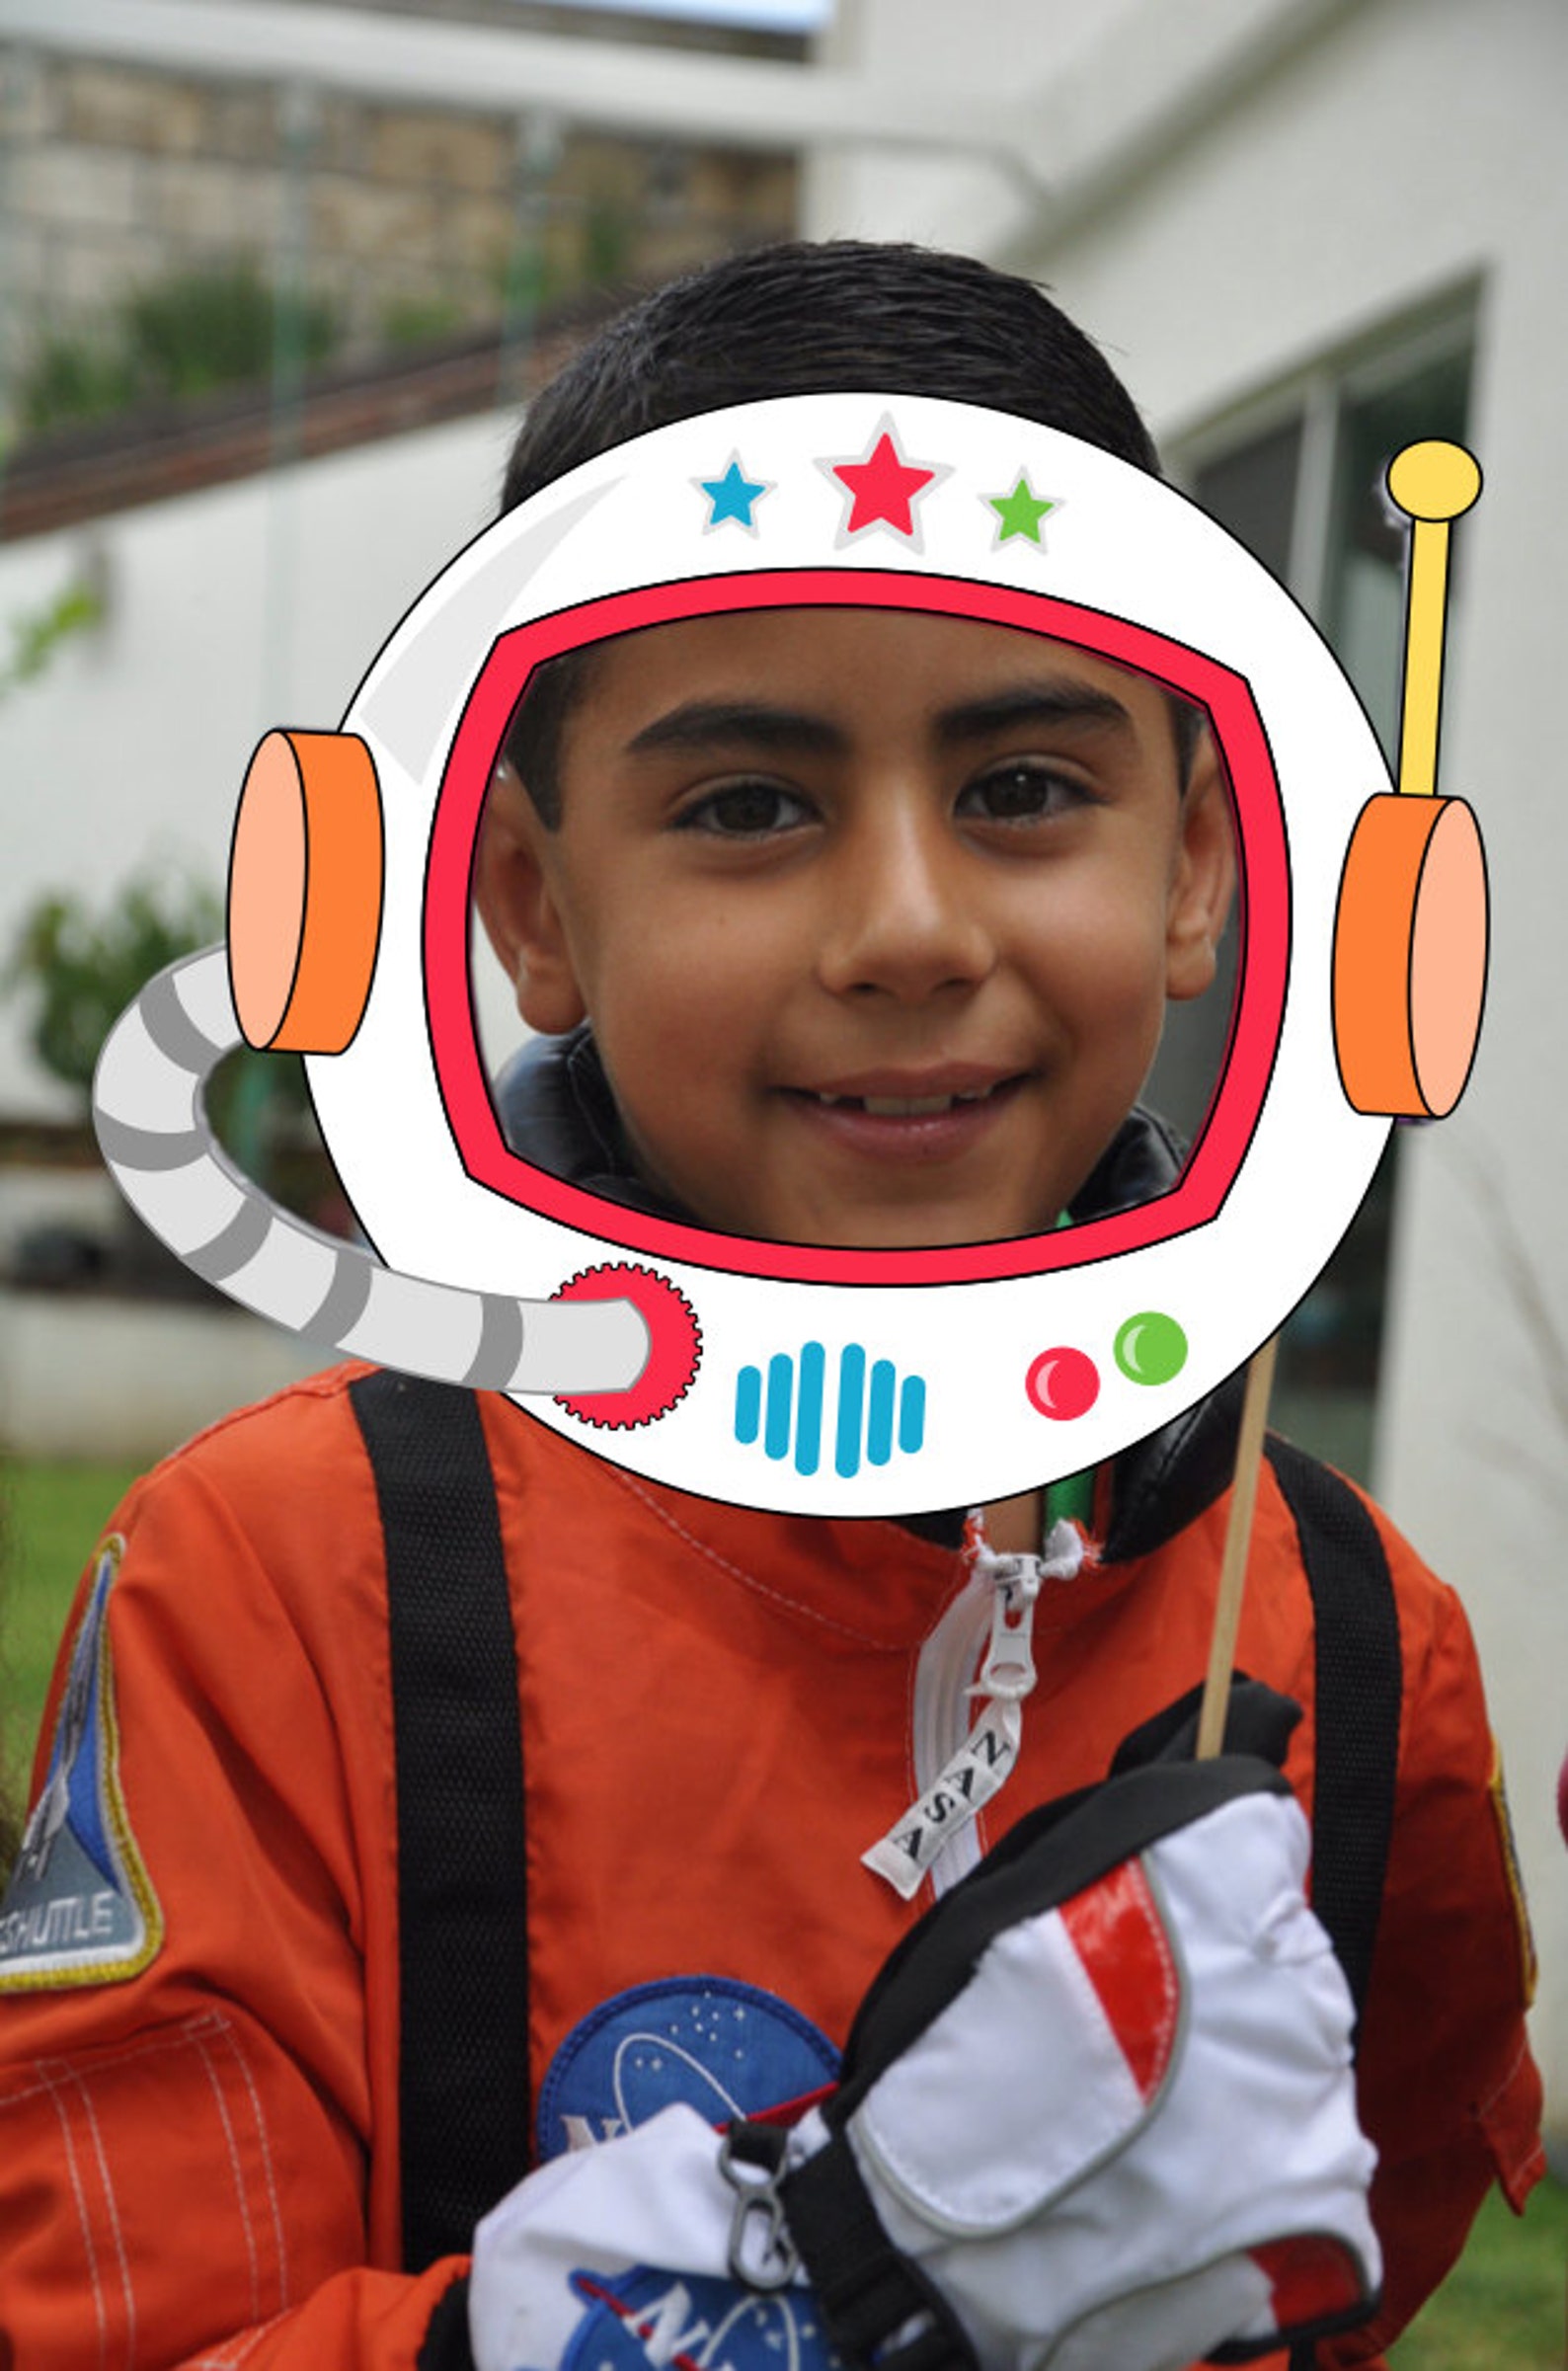 Шлем космонавта из картона. Шлем Космонавта детский картонный. Космический шлем для ребенка. Космический шлем в детский сад.